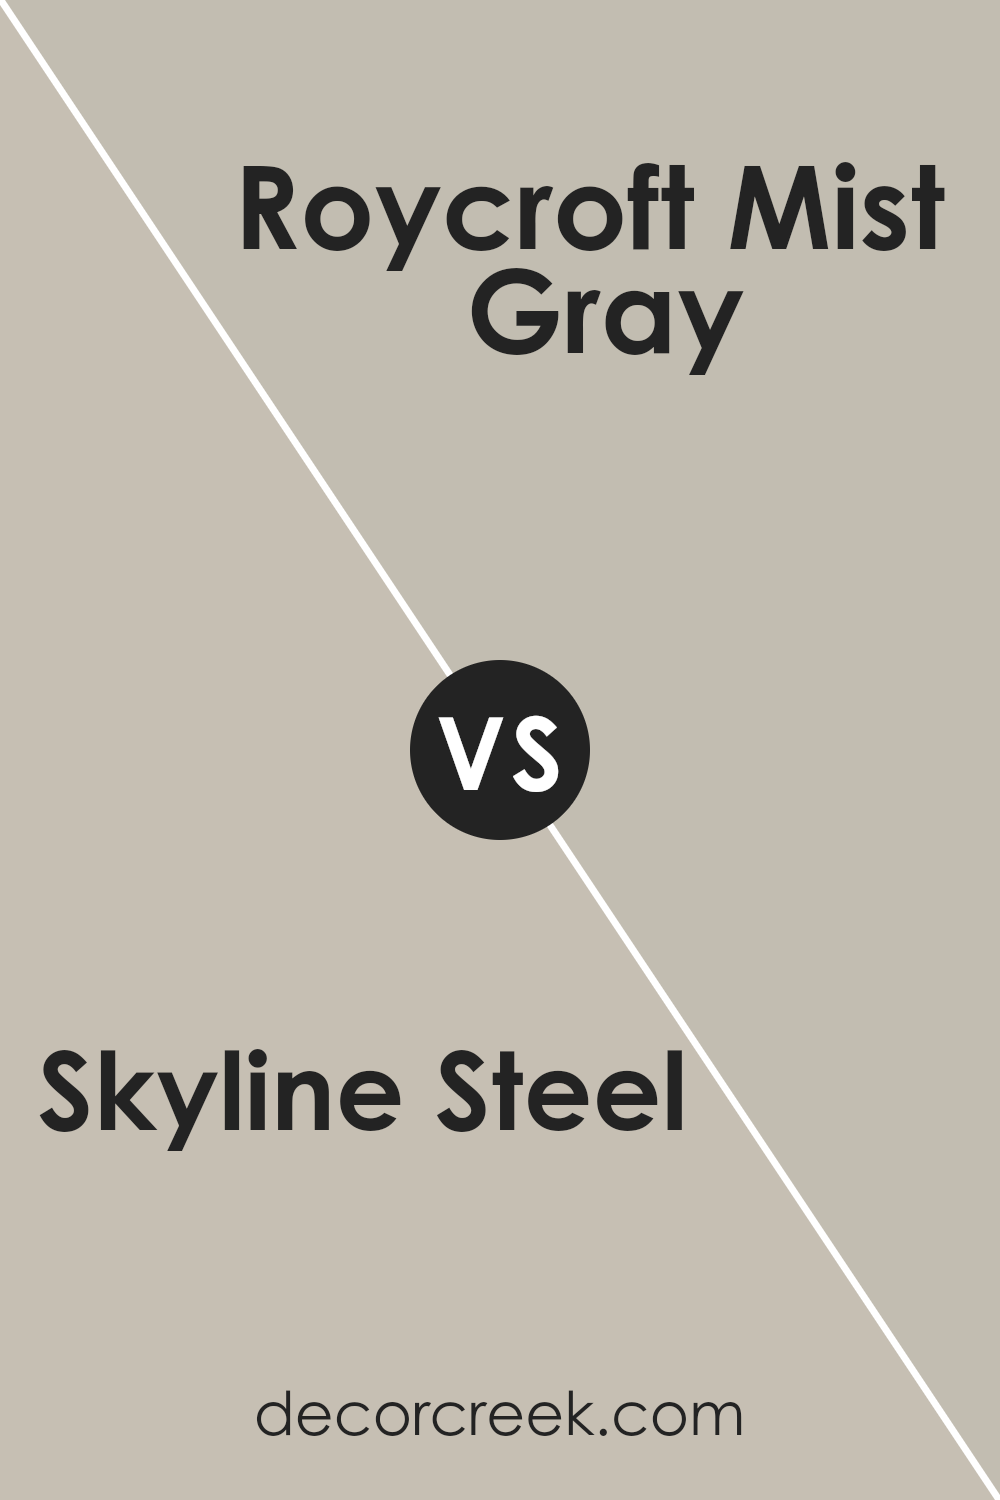 skyline_steel_sw_1015_vs_roycroft_mist_gray_sw_2844